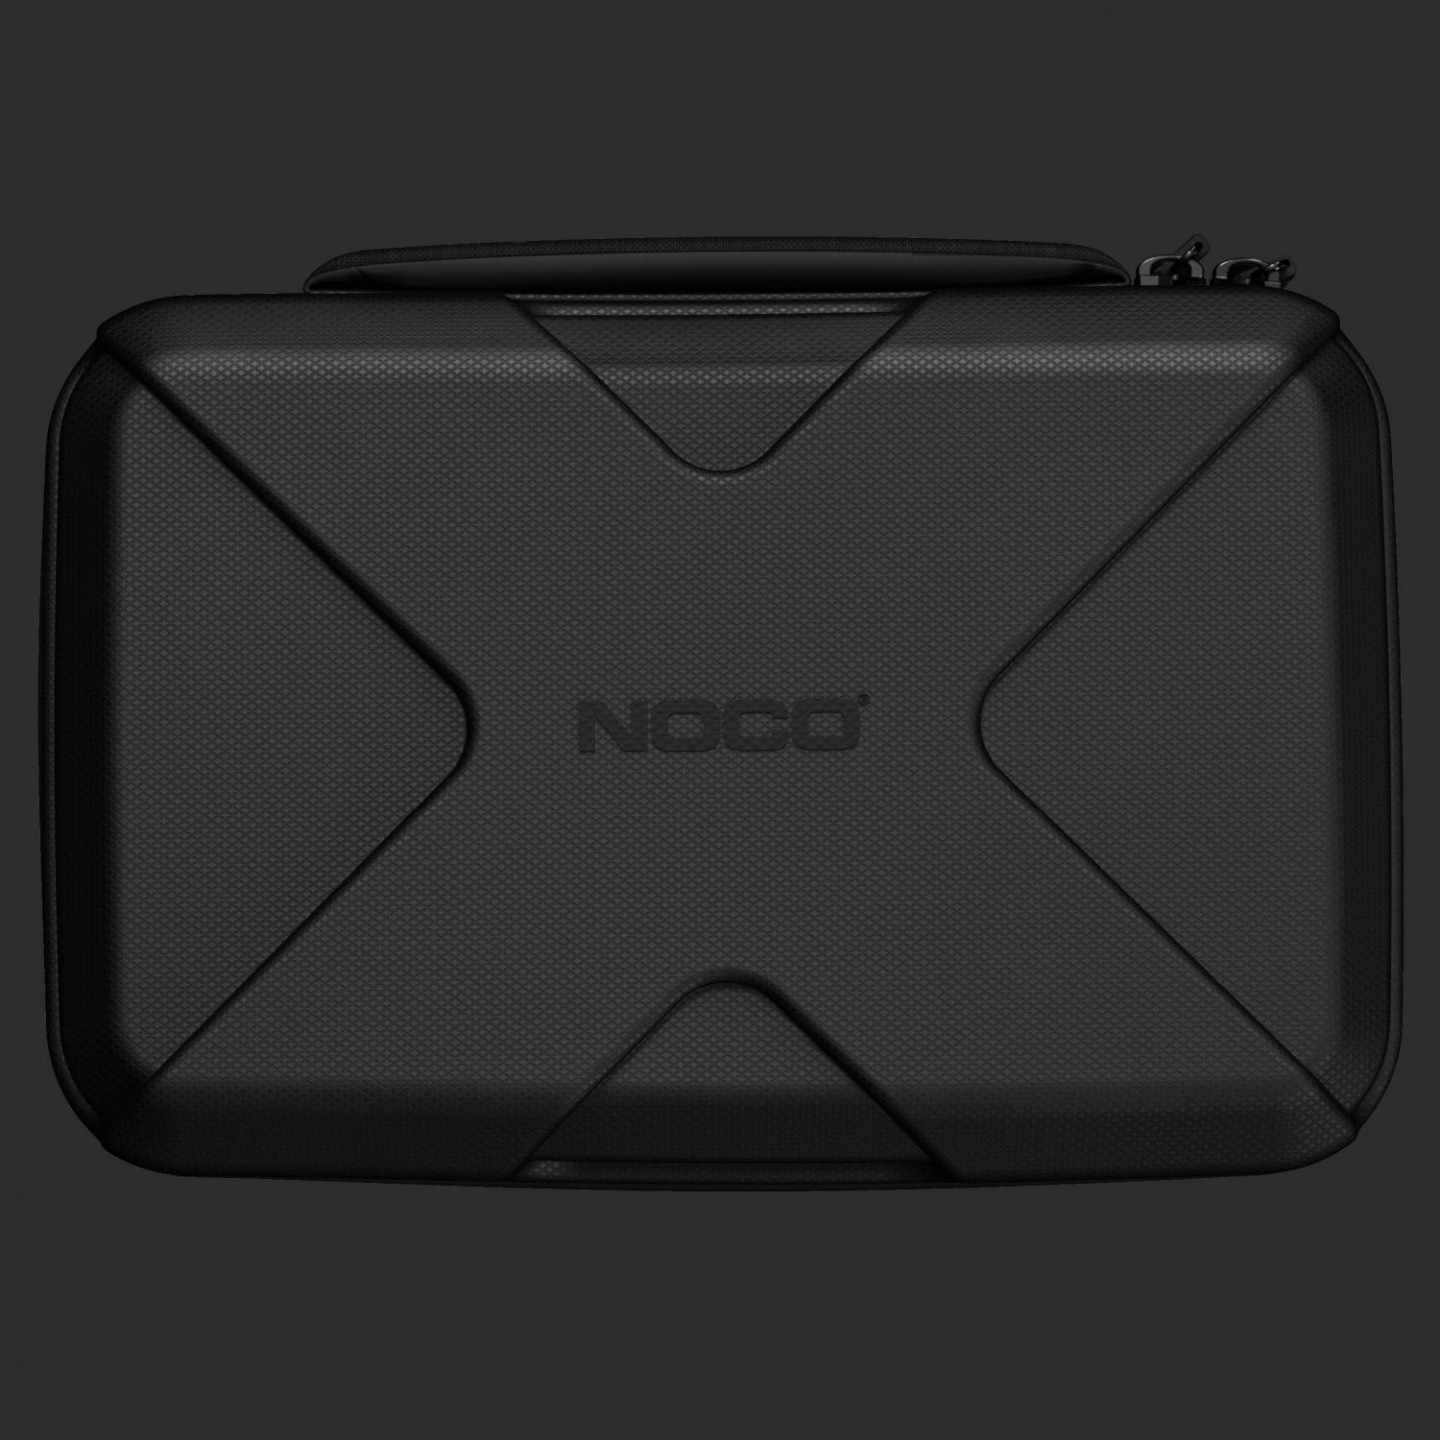 NOCO GBC103 iekārtas GBX75 aizsargsoma